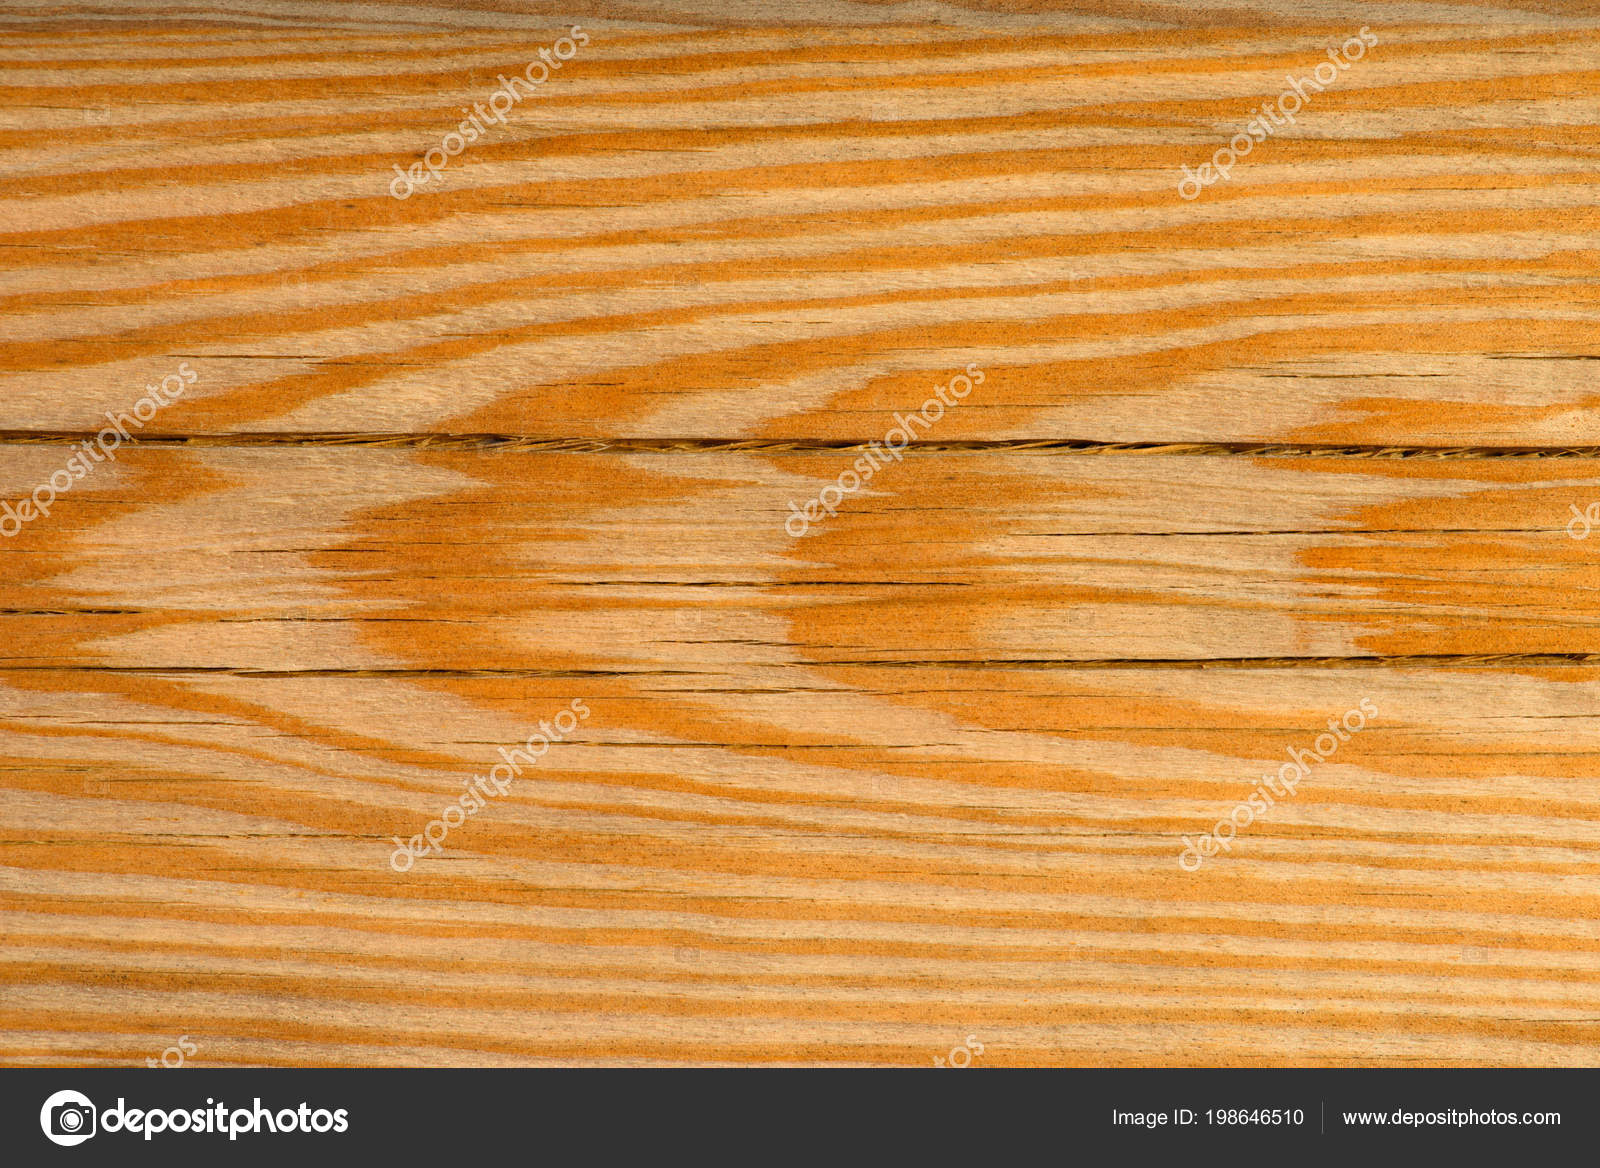 茶色の木製の背景の完全なフレームのイメージ 無料のストック写真 C Kostyaklimenko